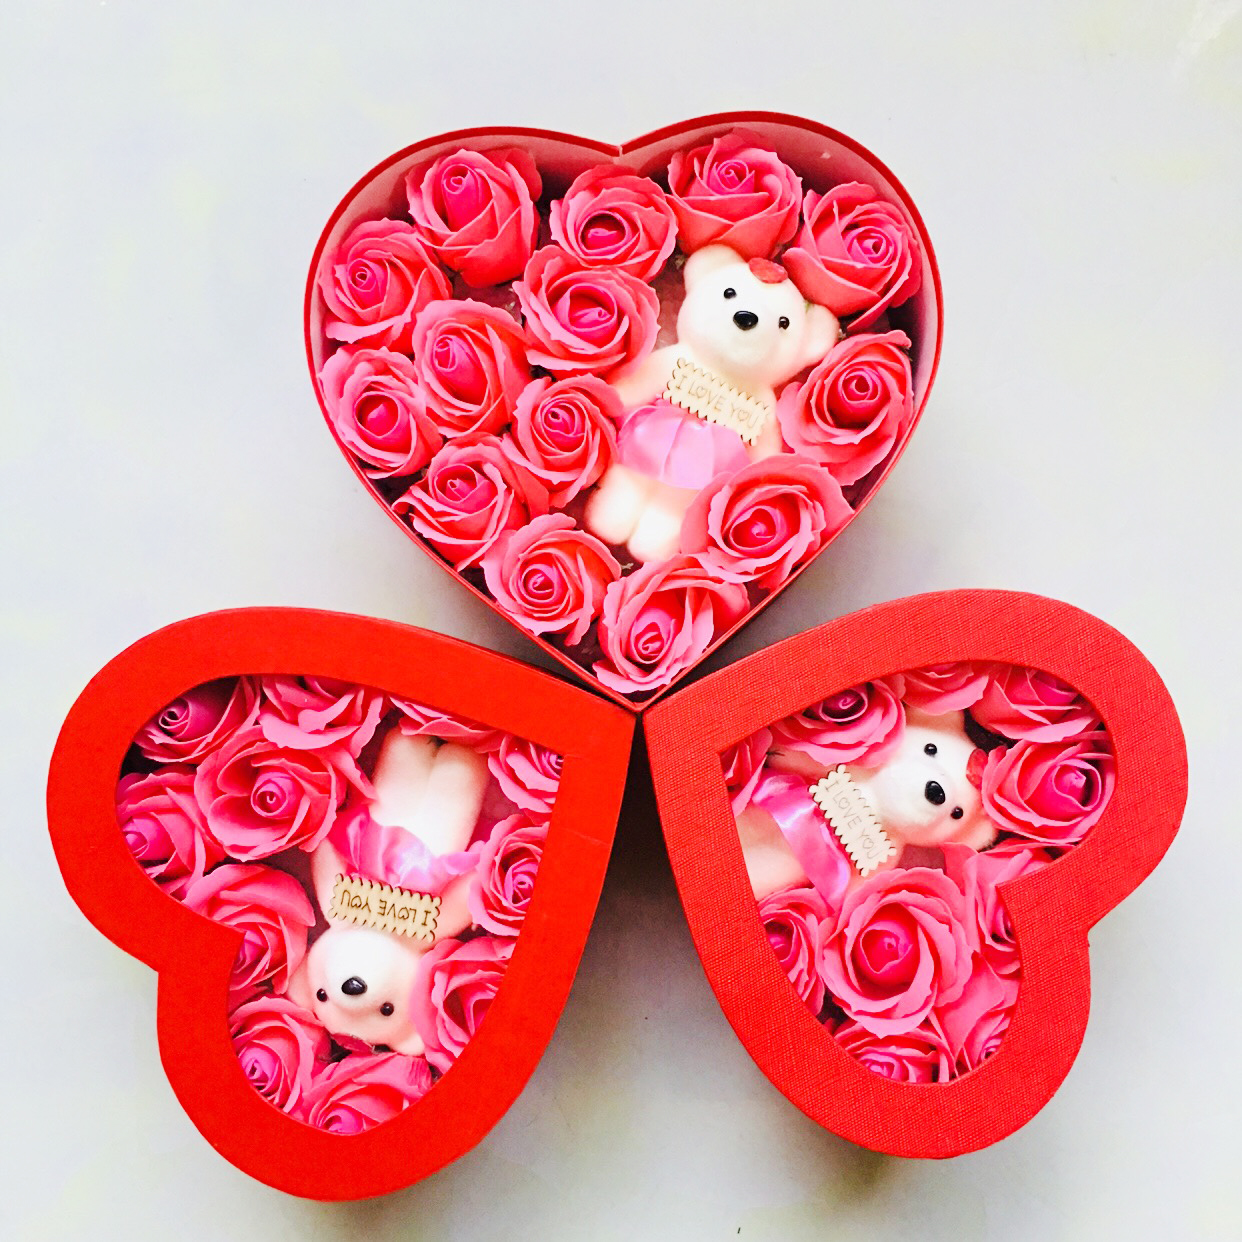 Quà tặng valentine hộp hoa hồng sáp hình trái tim, kèm gấu siêu đẹp đủ màu sắc, kích thước, món quà sinh nhật